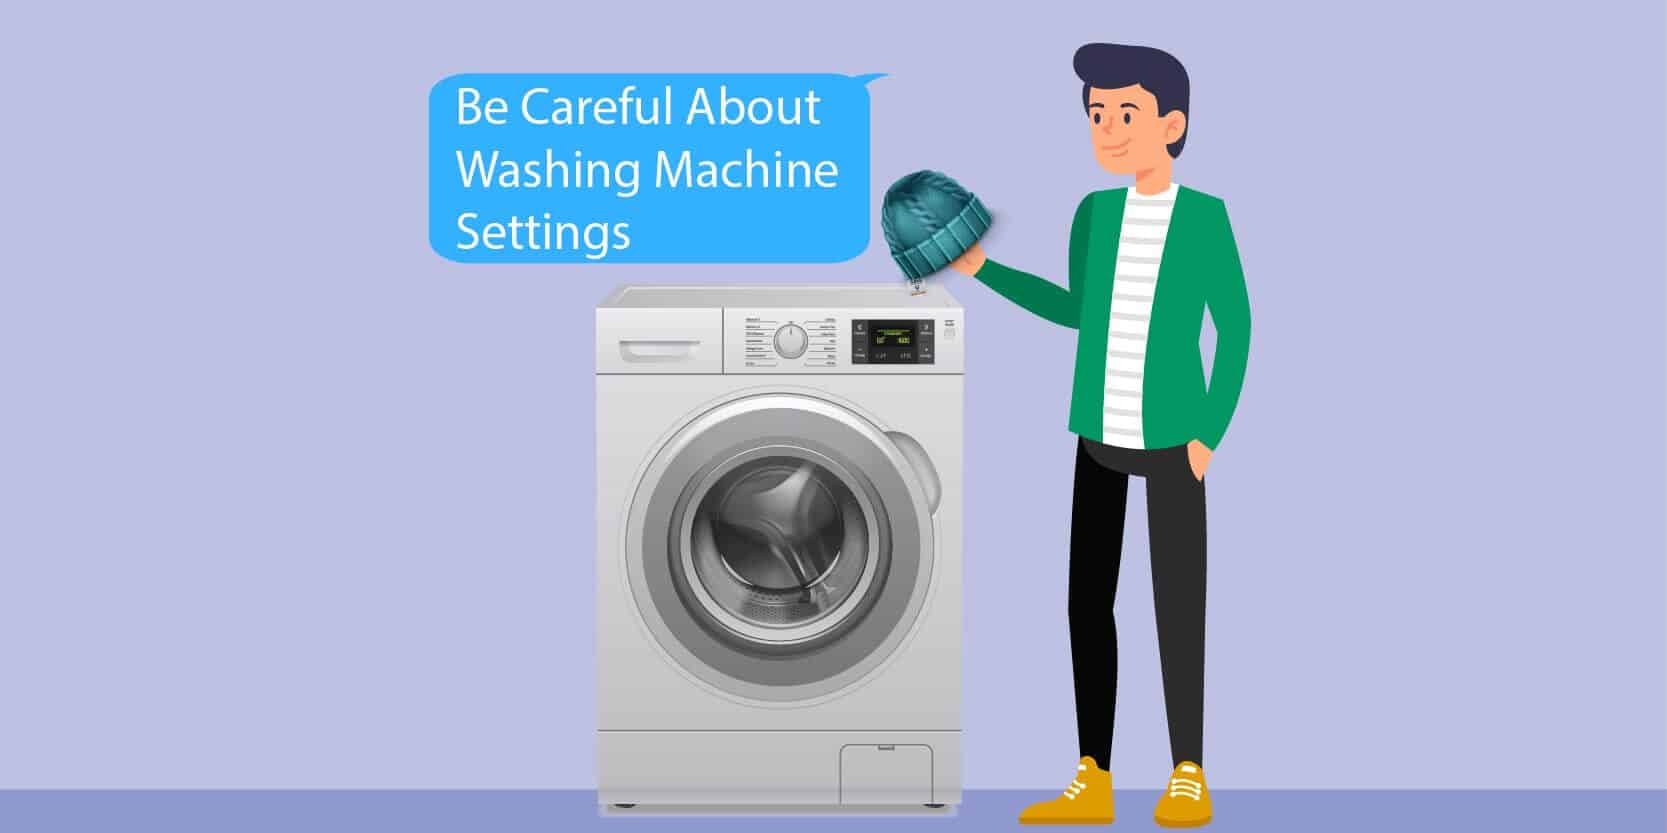 Be Careful About Washing Machine Settings